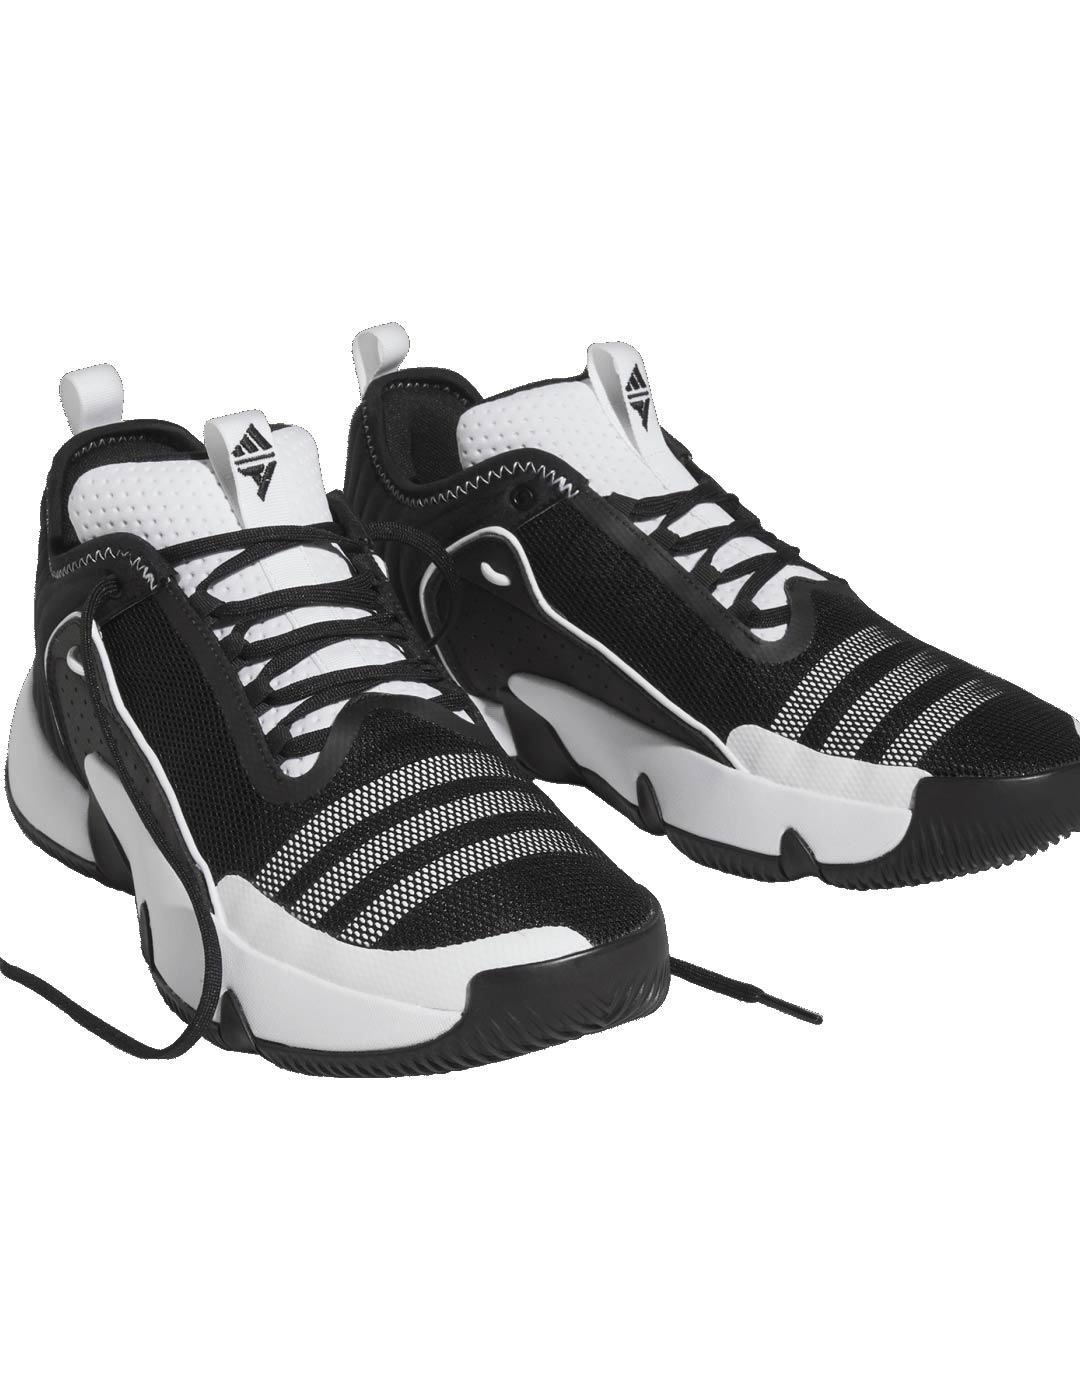 zapatilla de baloncesto adidas hombre TRAE UNLIMITED, negro/blanco